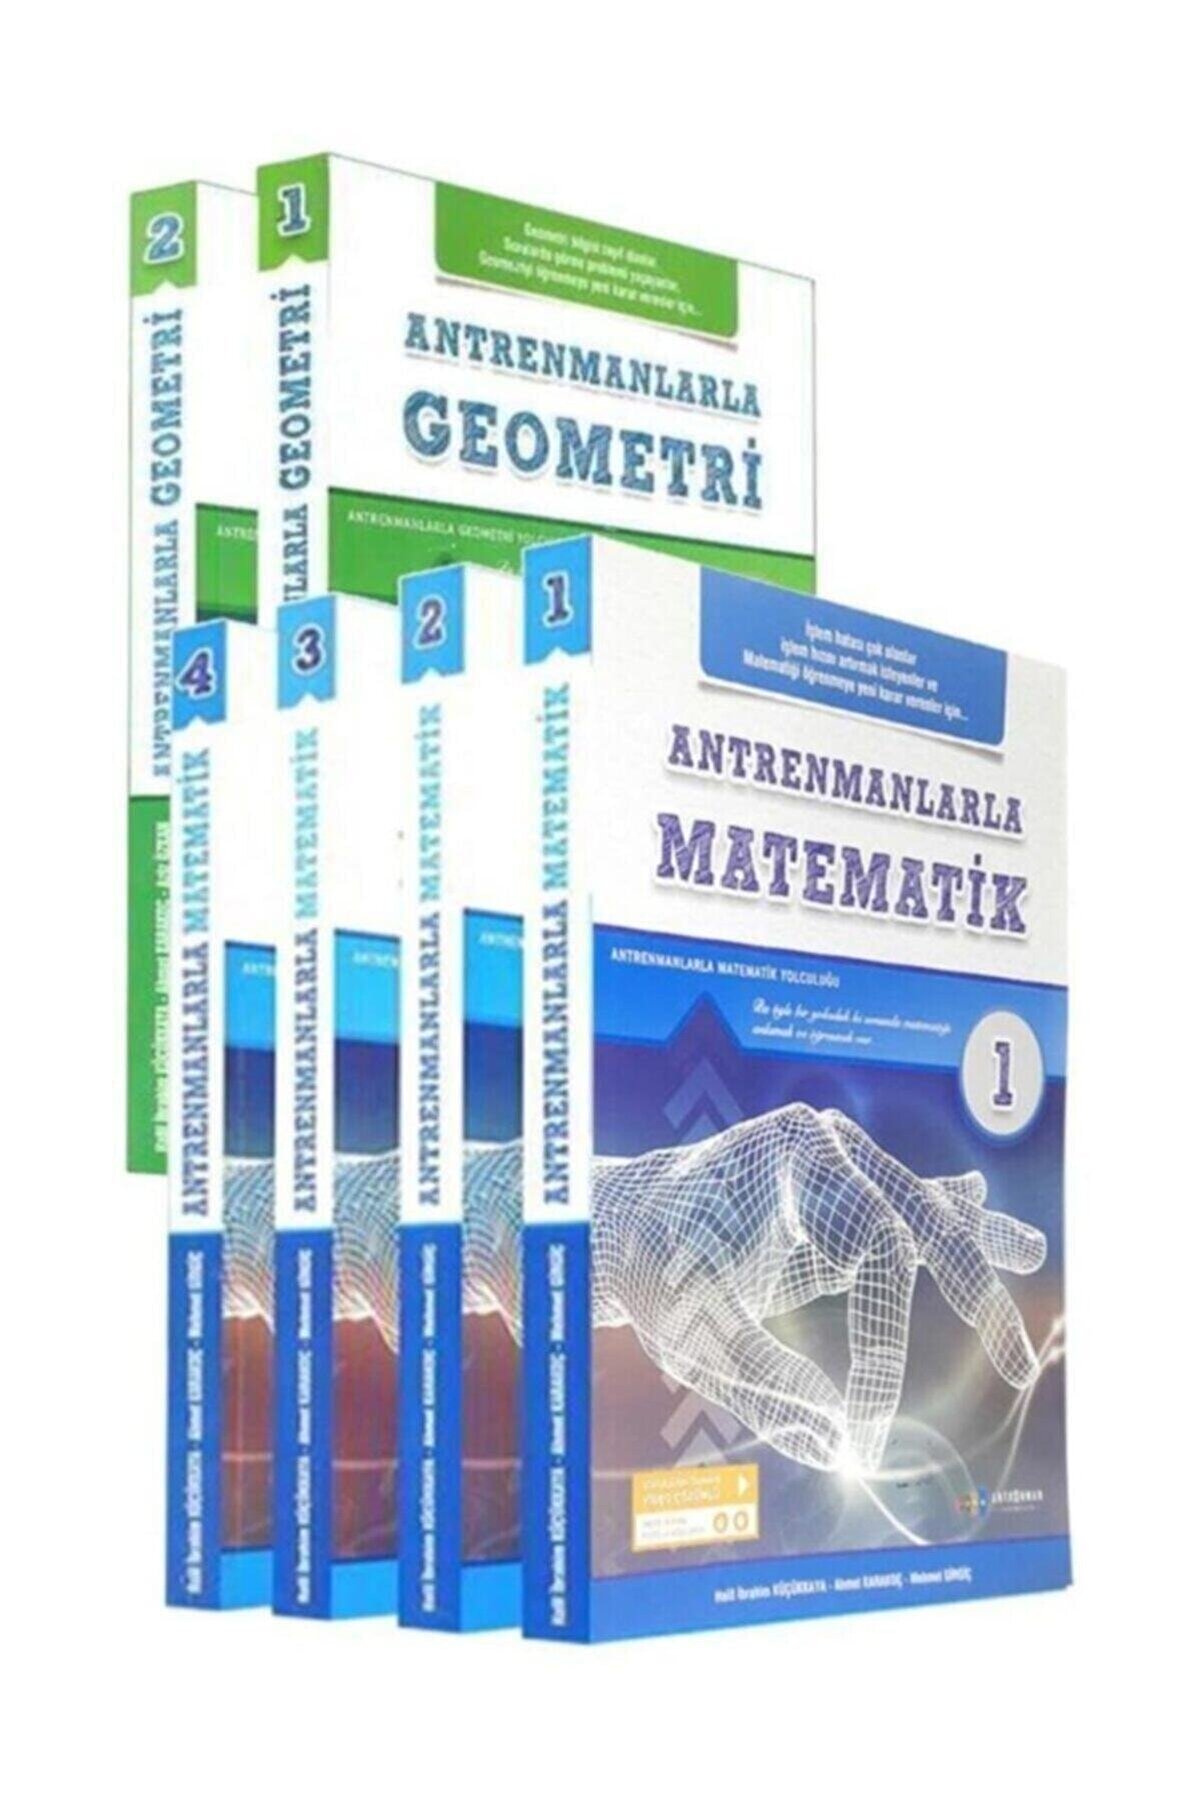 Antrenman Yayınları Antrenman Yayıncılık Antrenmanlarla 2020 Matematik 1-2-3-4 Antrenmanlarla Geomet